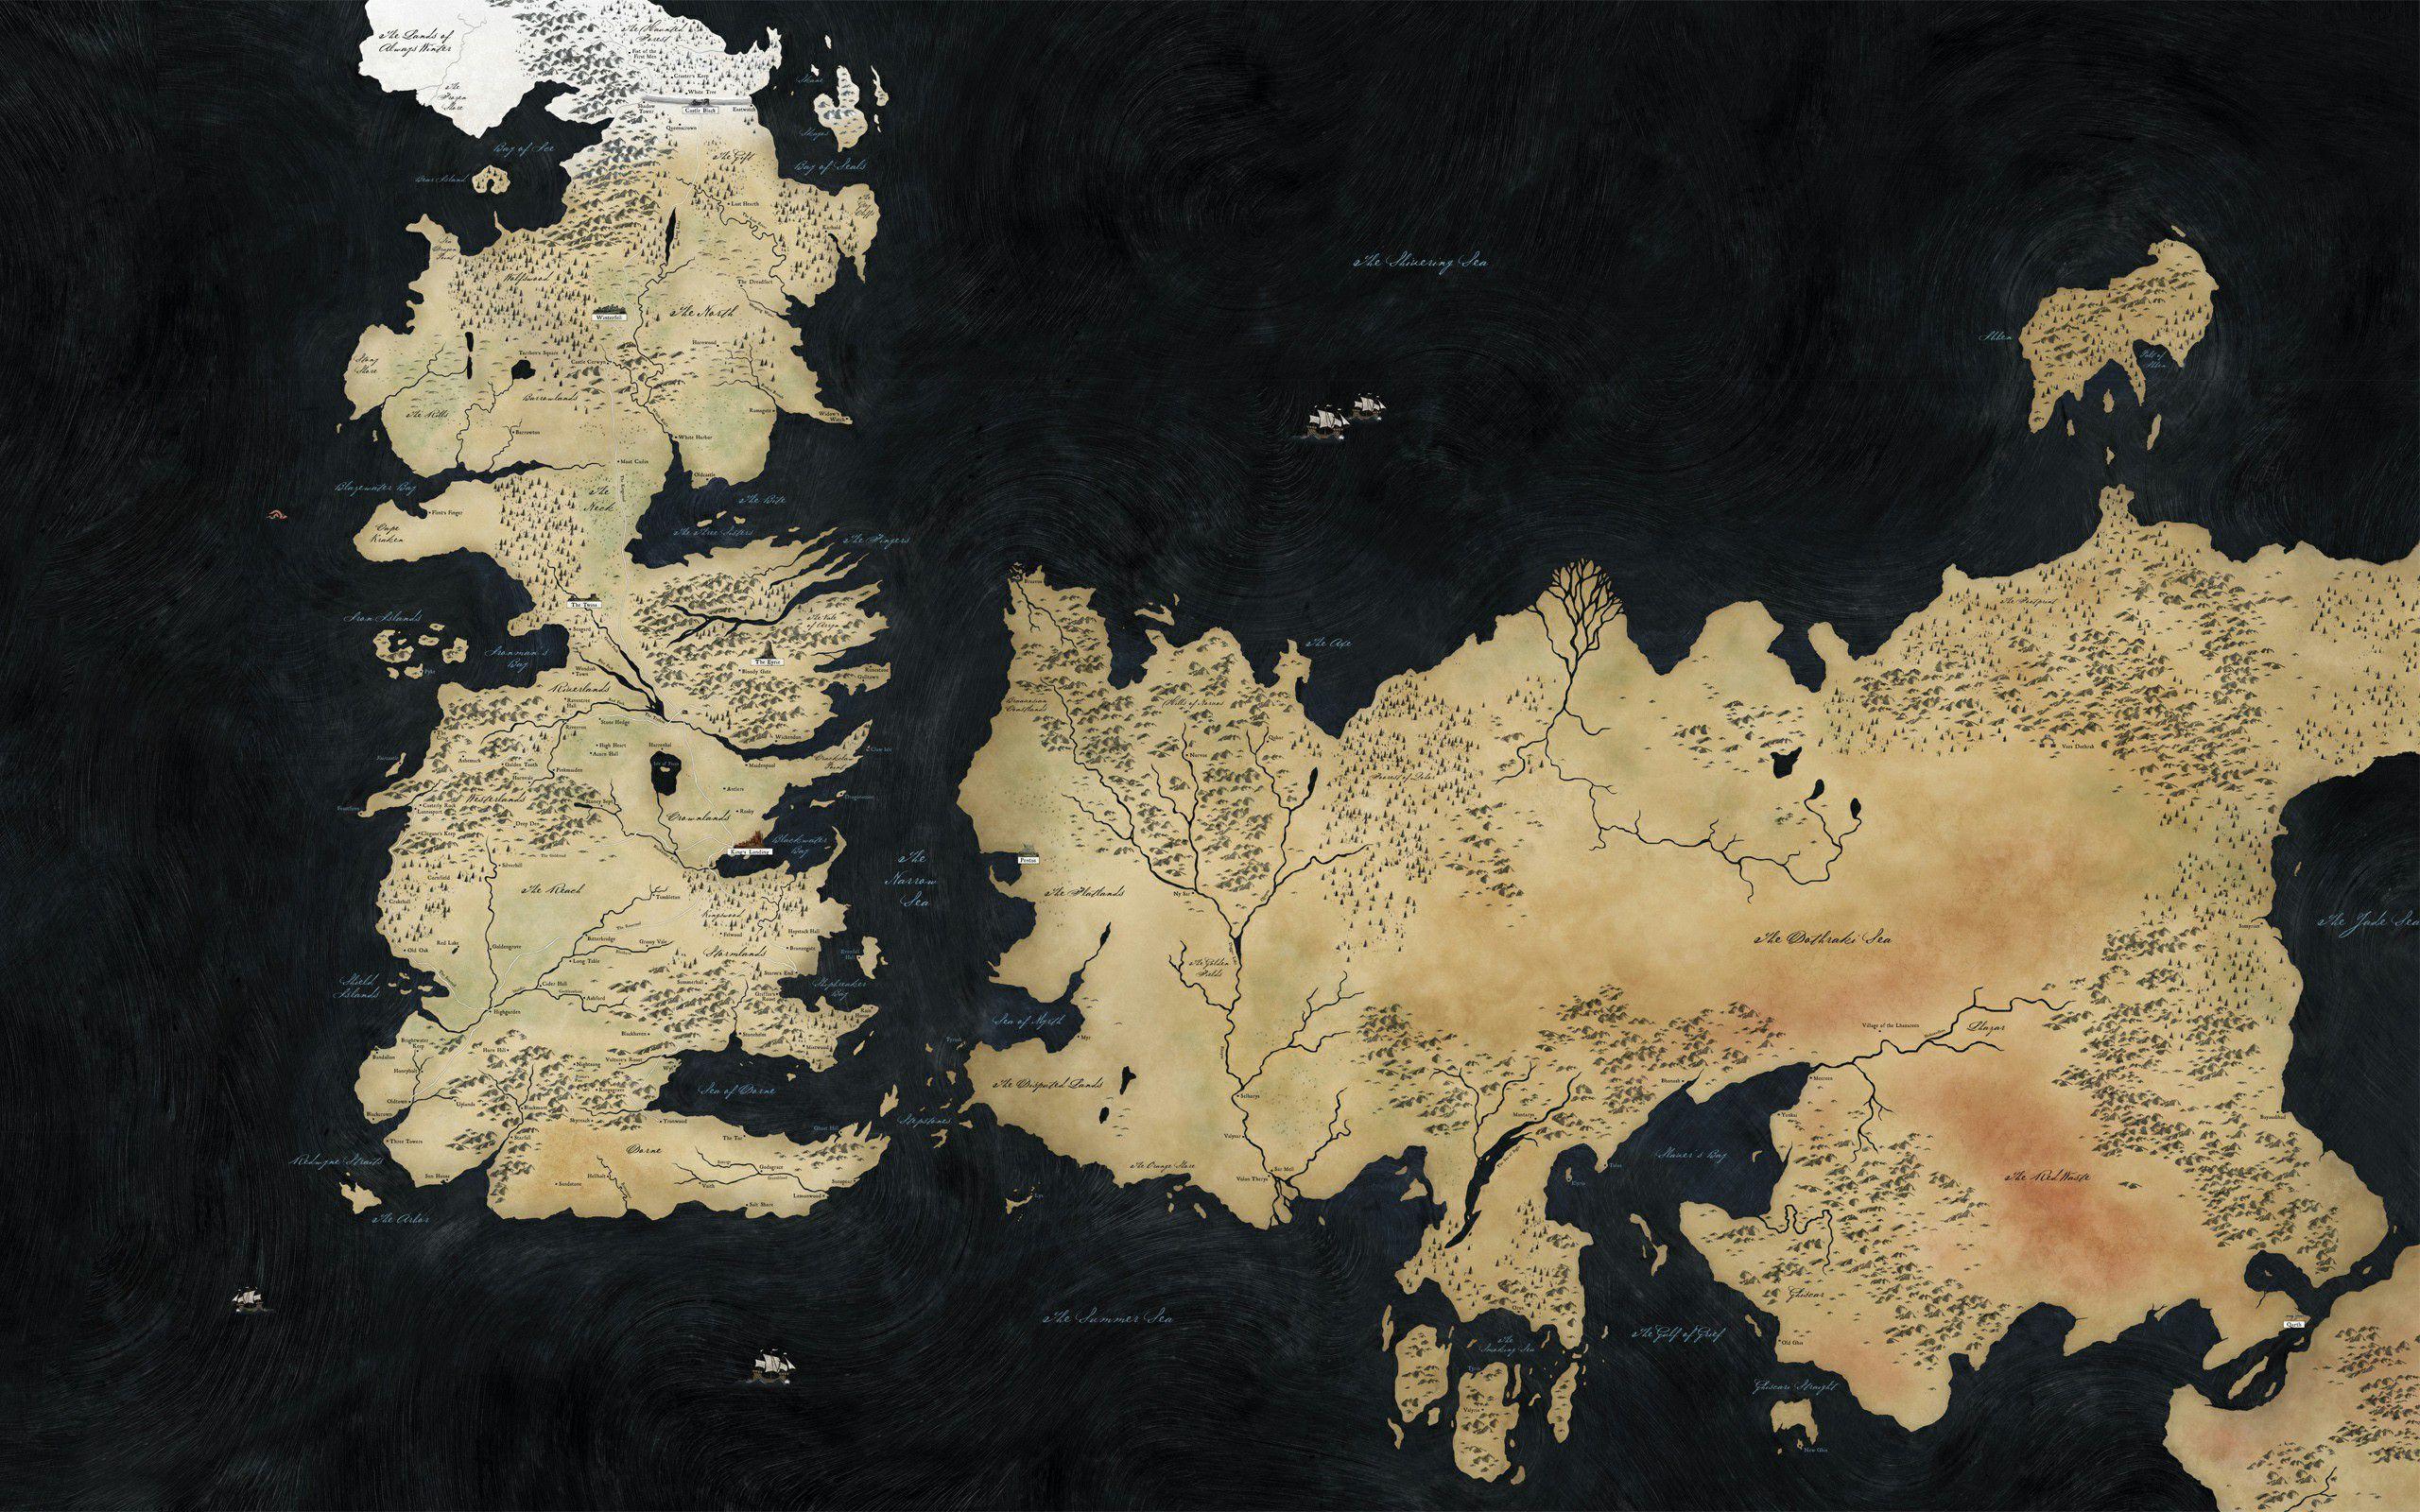 Bản đồ Game of Thrones sẽ đưa bạn đến đại lục Westeros và Essos, nơi những tuyệt phẩm chiến tranh xảy ra. Hãy theo dõi bản đồ này để khám phá các vương quốc vĩ đại và định hình chiến lược của riêng bạn!